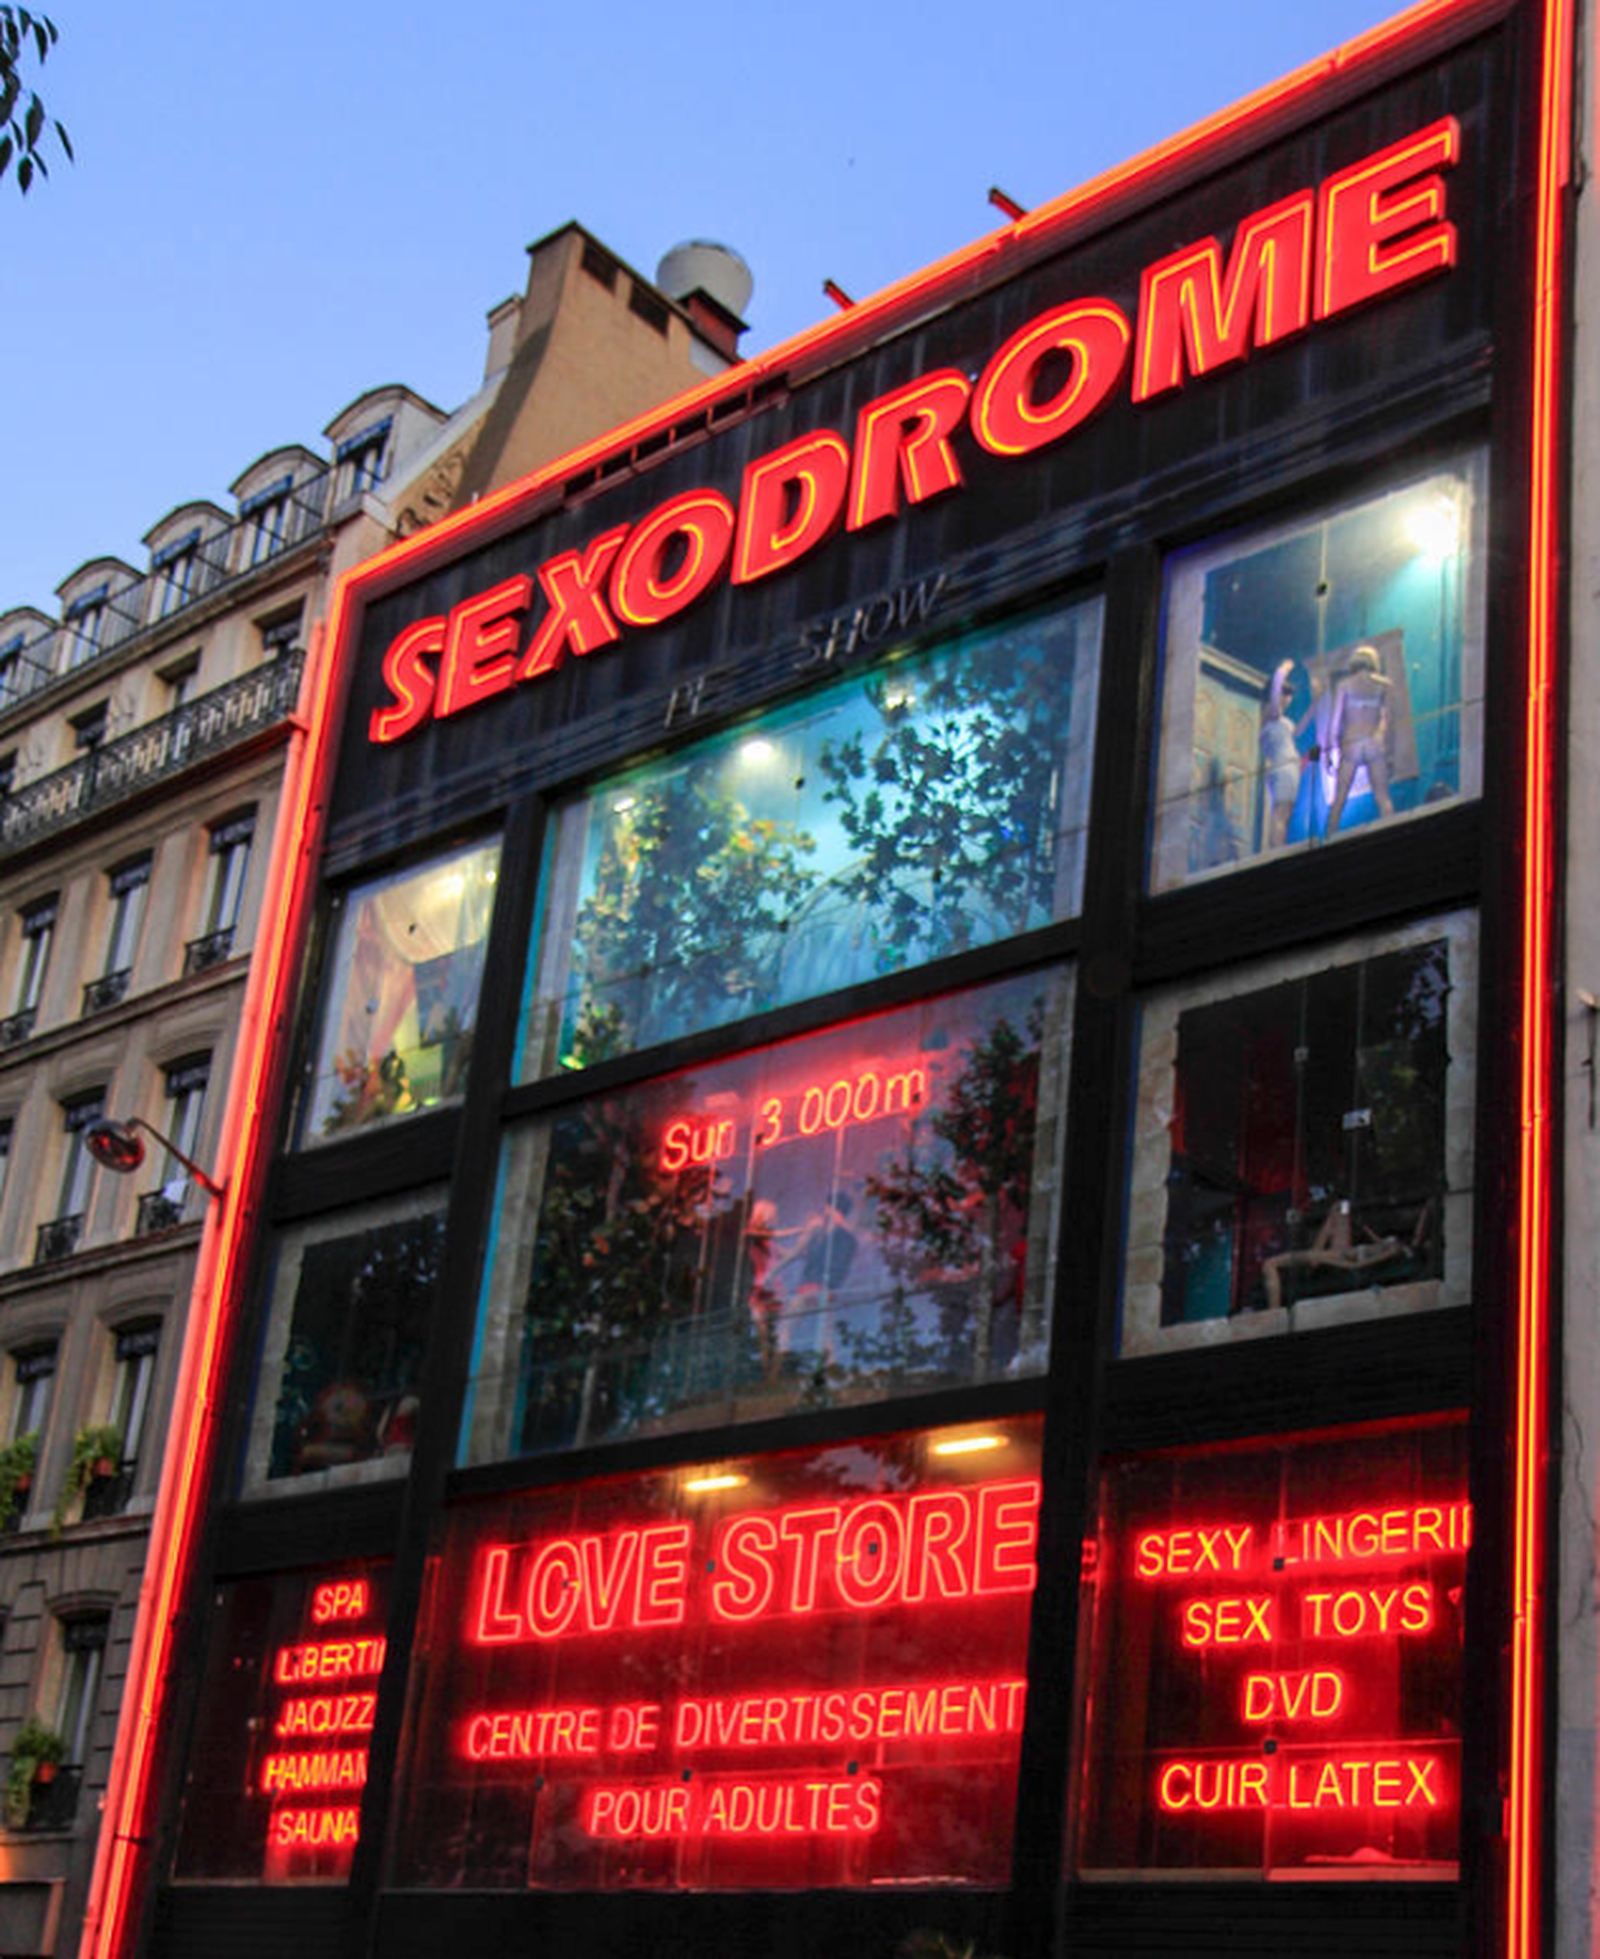 In shop the Paris sex Les meilleurs